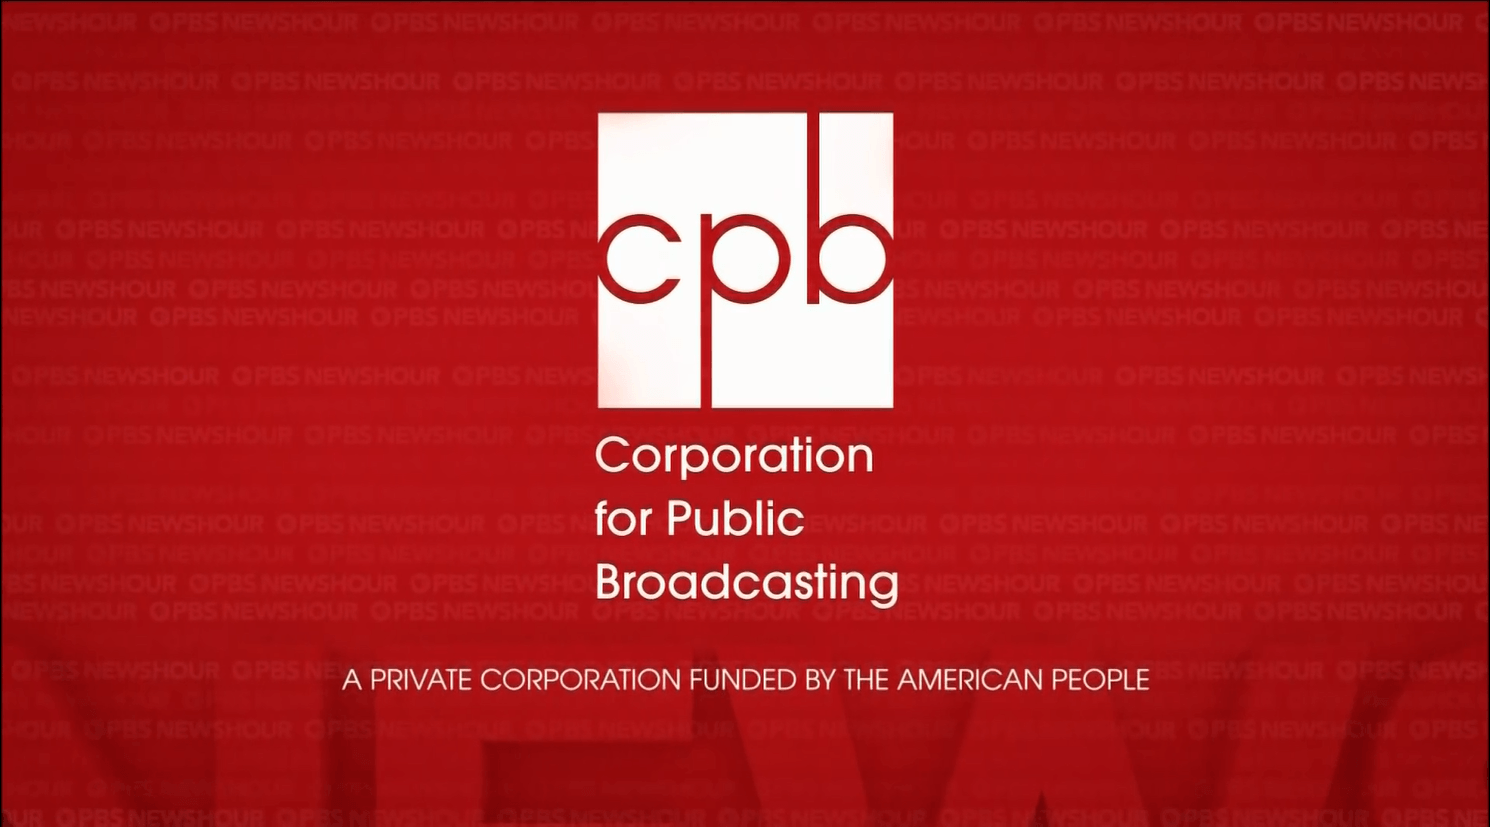 CPB Logo - Image - PBS NewsHour CPB 2017 Logo.PNG | Logopedia | FANDOM powered ...